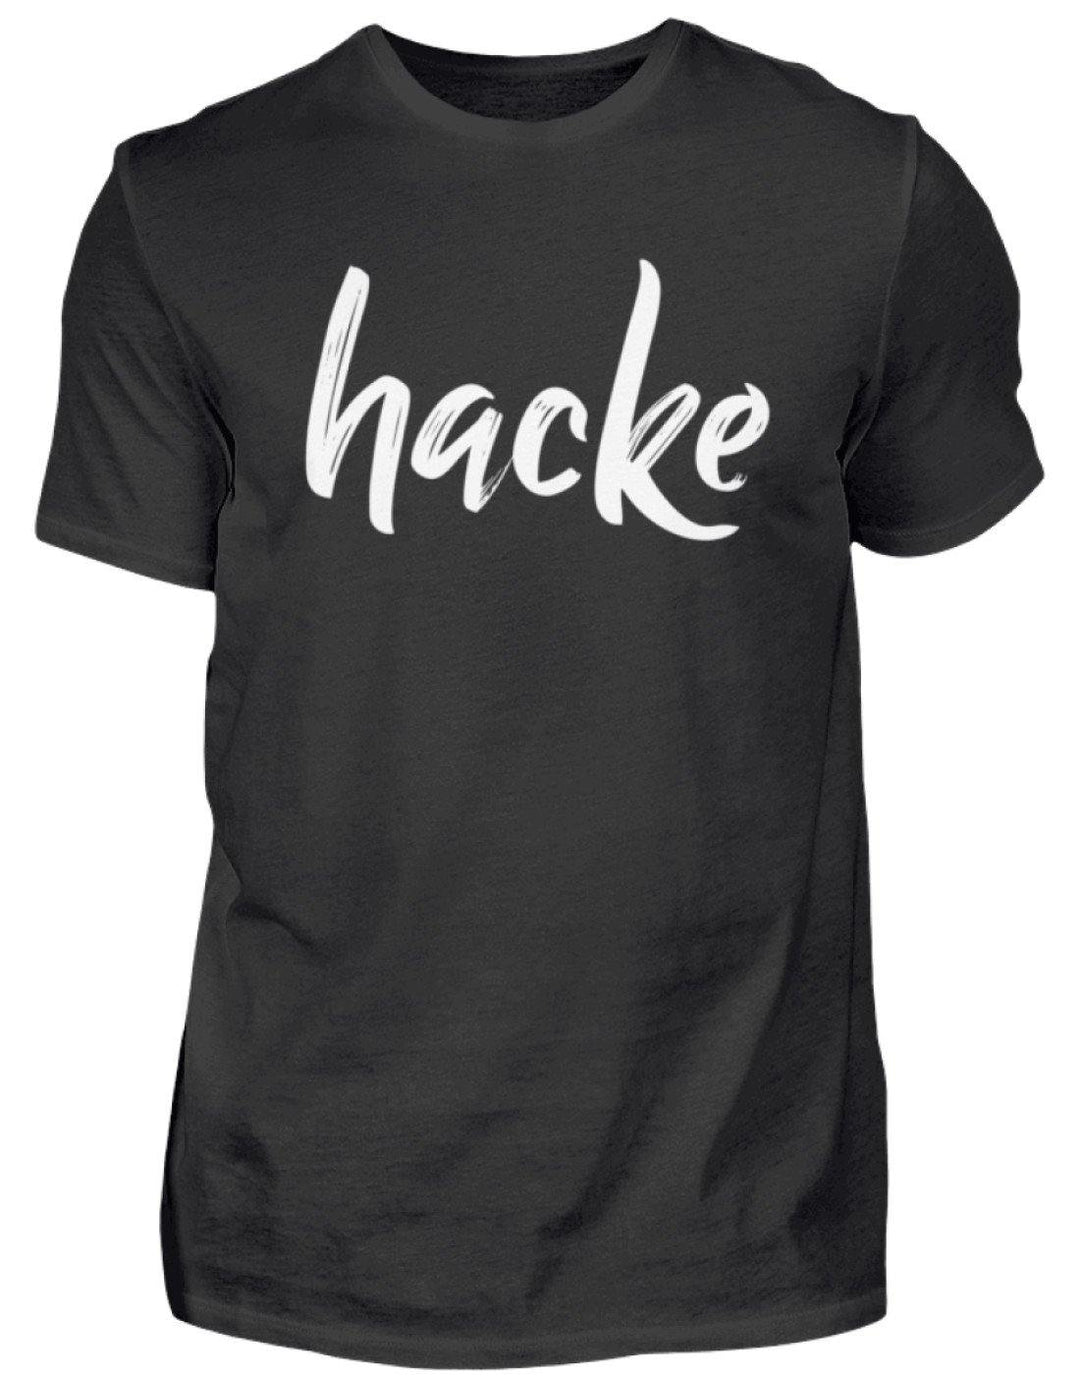 hacke Shirt  - Herren Shirt - Words on Shirts Sag es mit dem Mittelfinger Shirts Hoodies Sweatshirt Taschen Gymsack Spruch Sprüche Statement